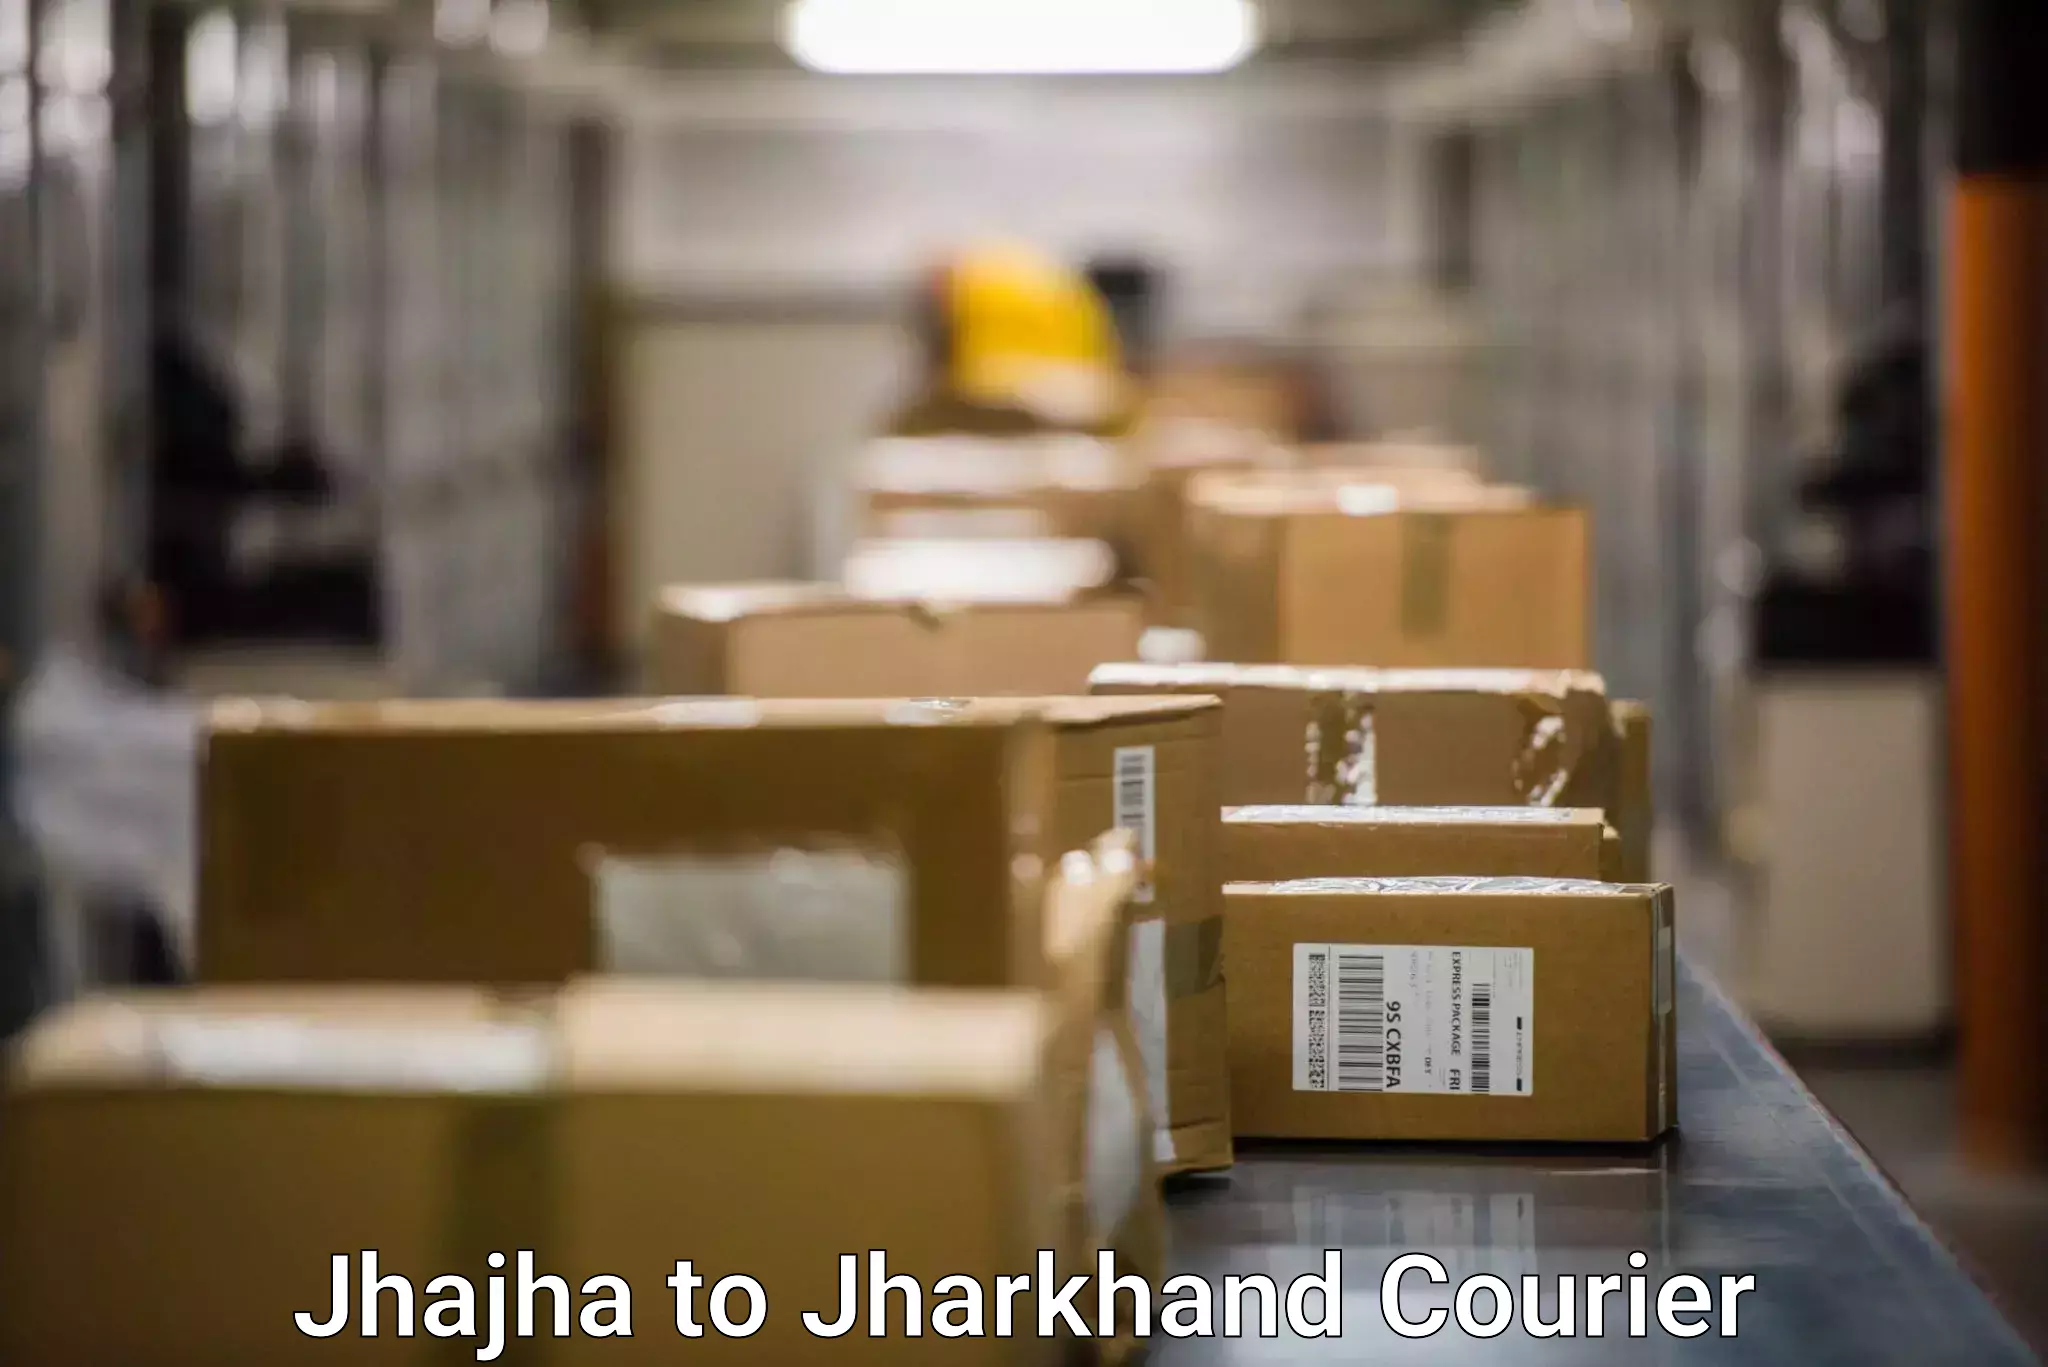 Express mail service Jhajha to Jharkhand